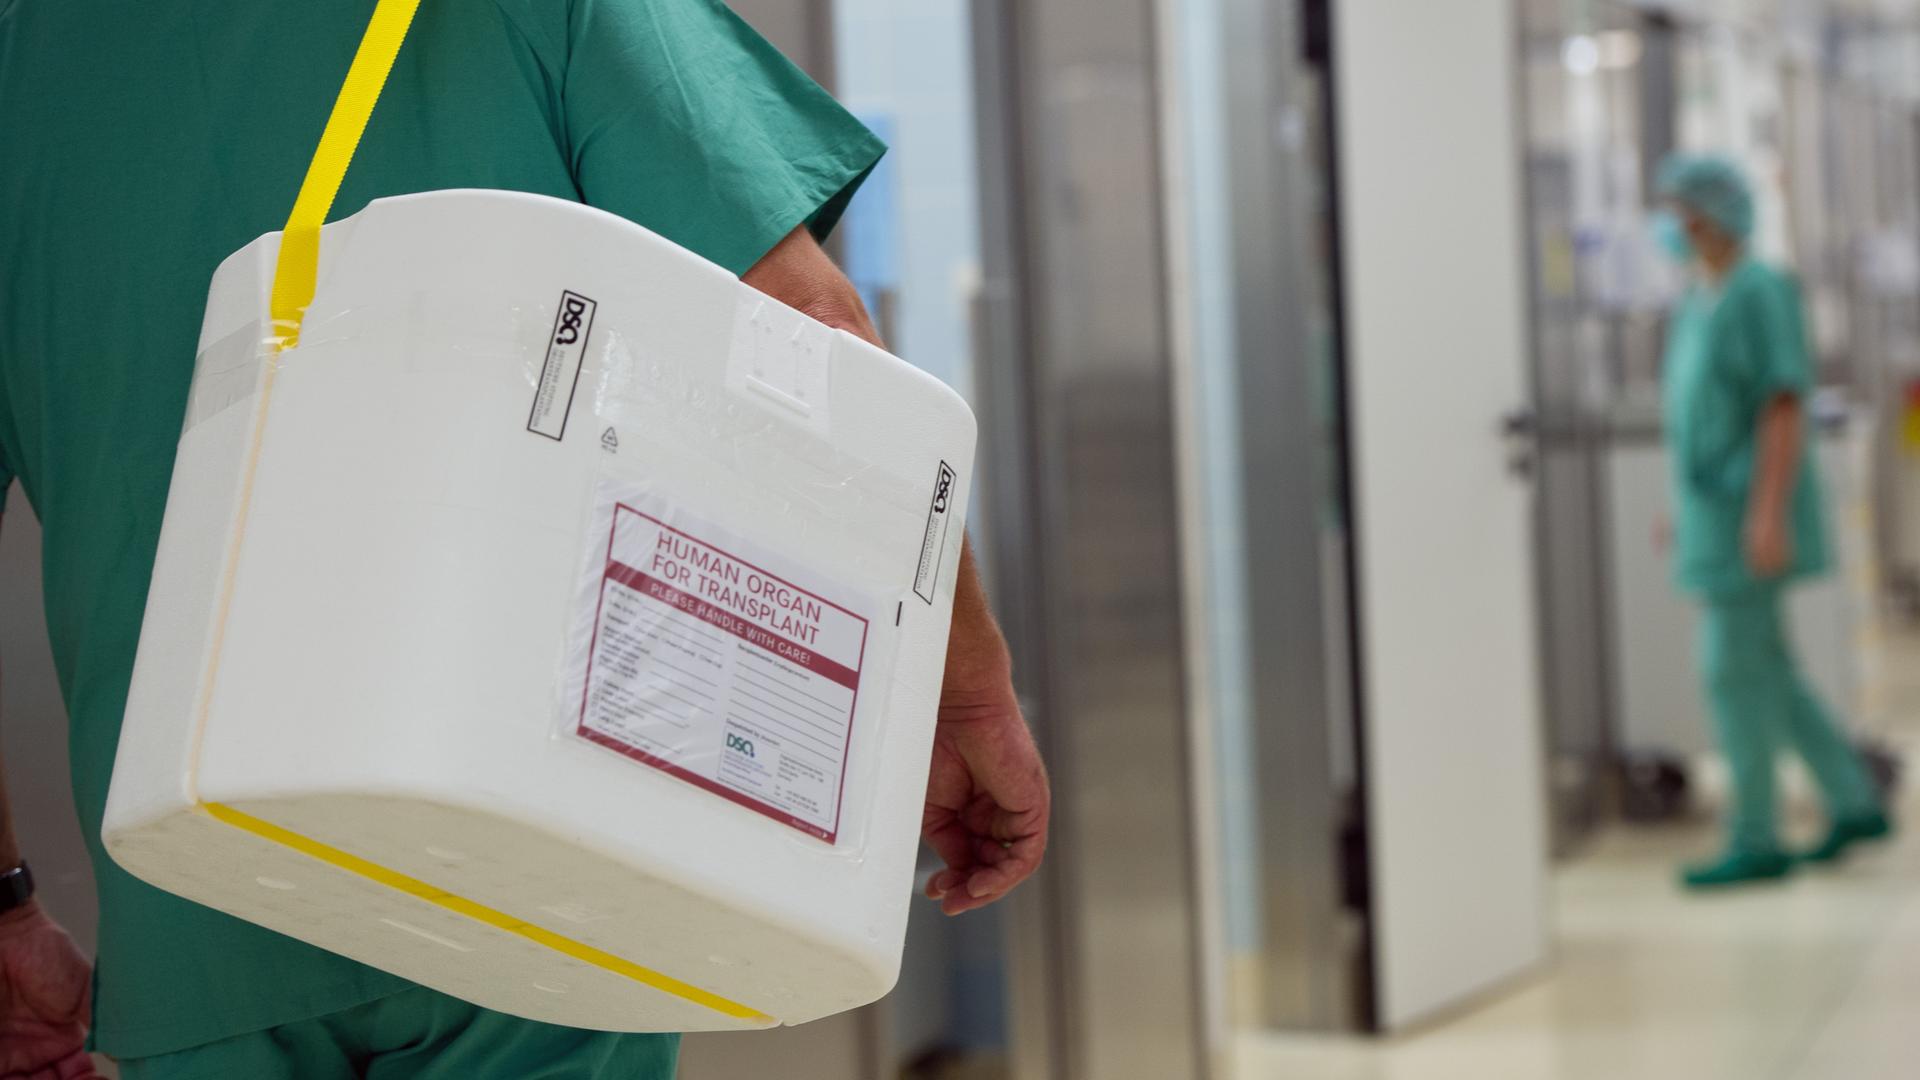 Ein Styropor-Behälter zum Transport von zur Transplantation vorgesehenen Organen wird an einem OP-Saal vorbei getragen.